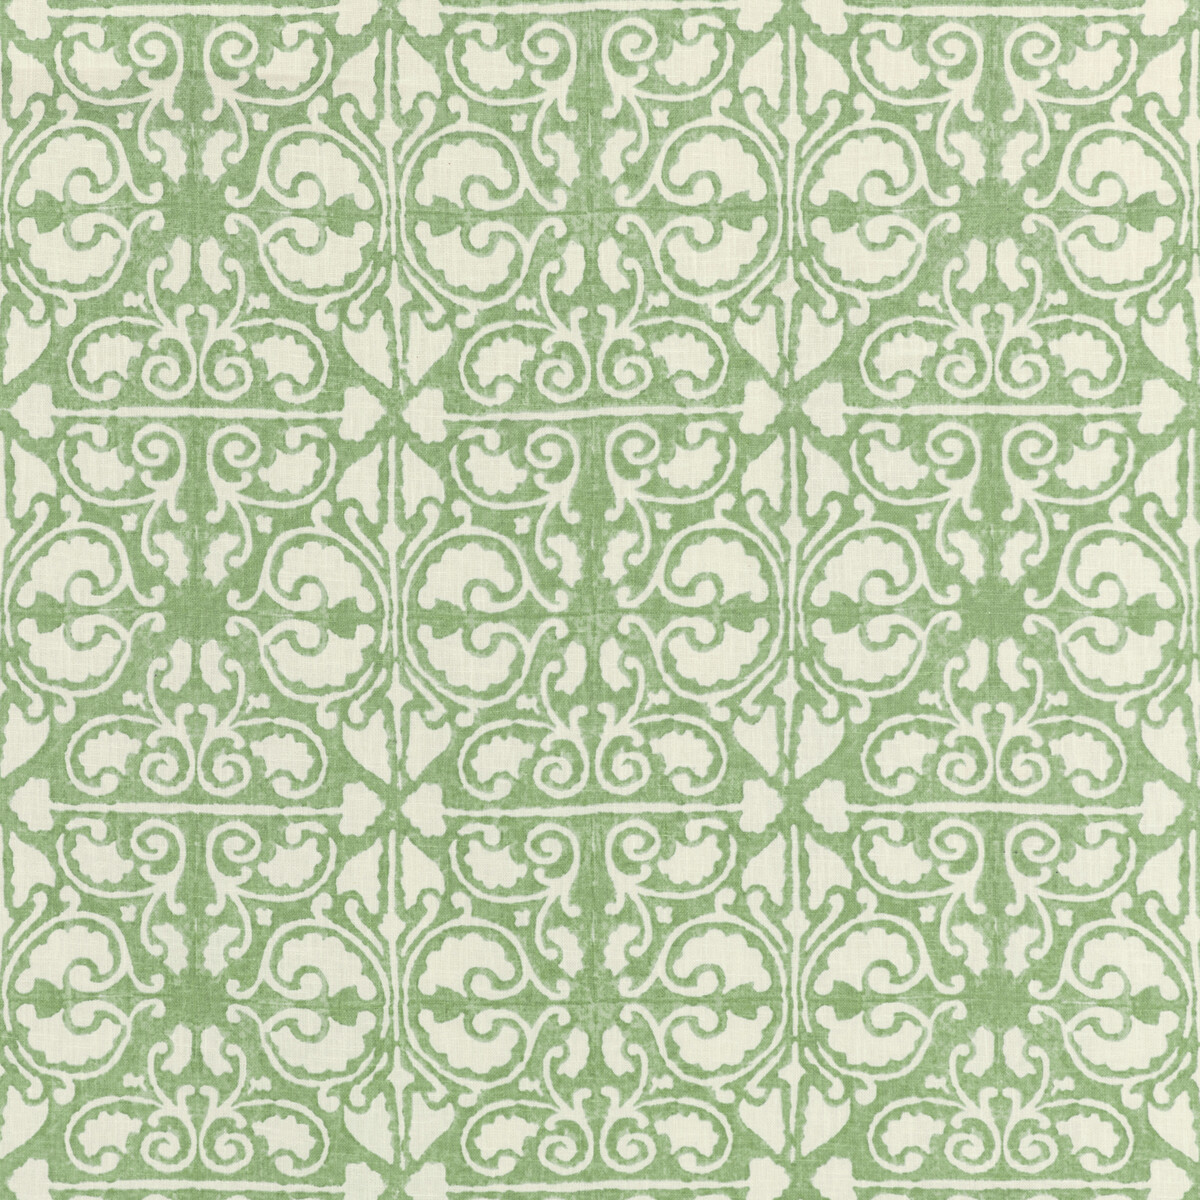 Kravet Basics Agra Tile.30.0 Kravet Basics Multipurpose Fabric in Agra Tile-30/Sage/White/Green